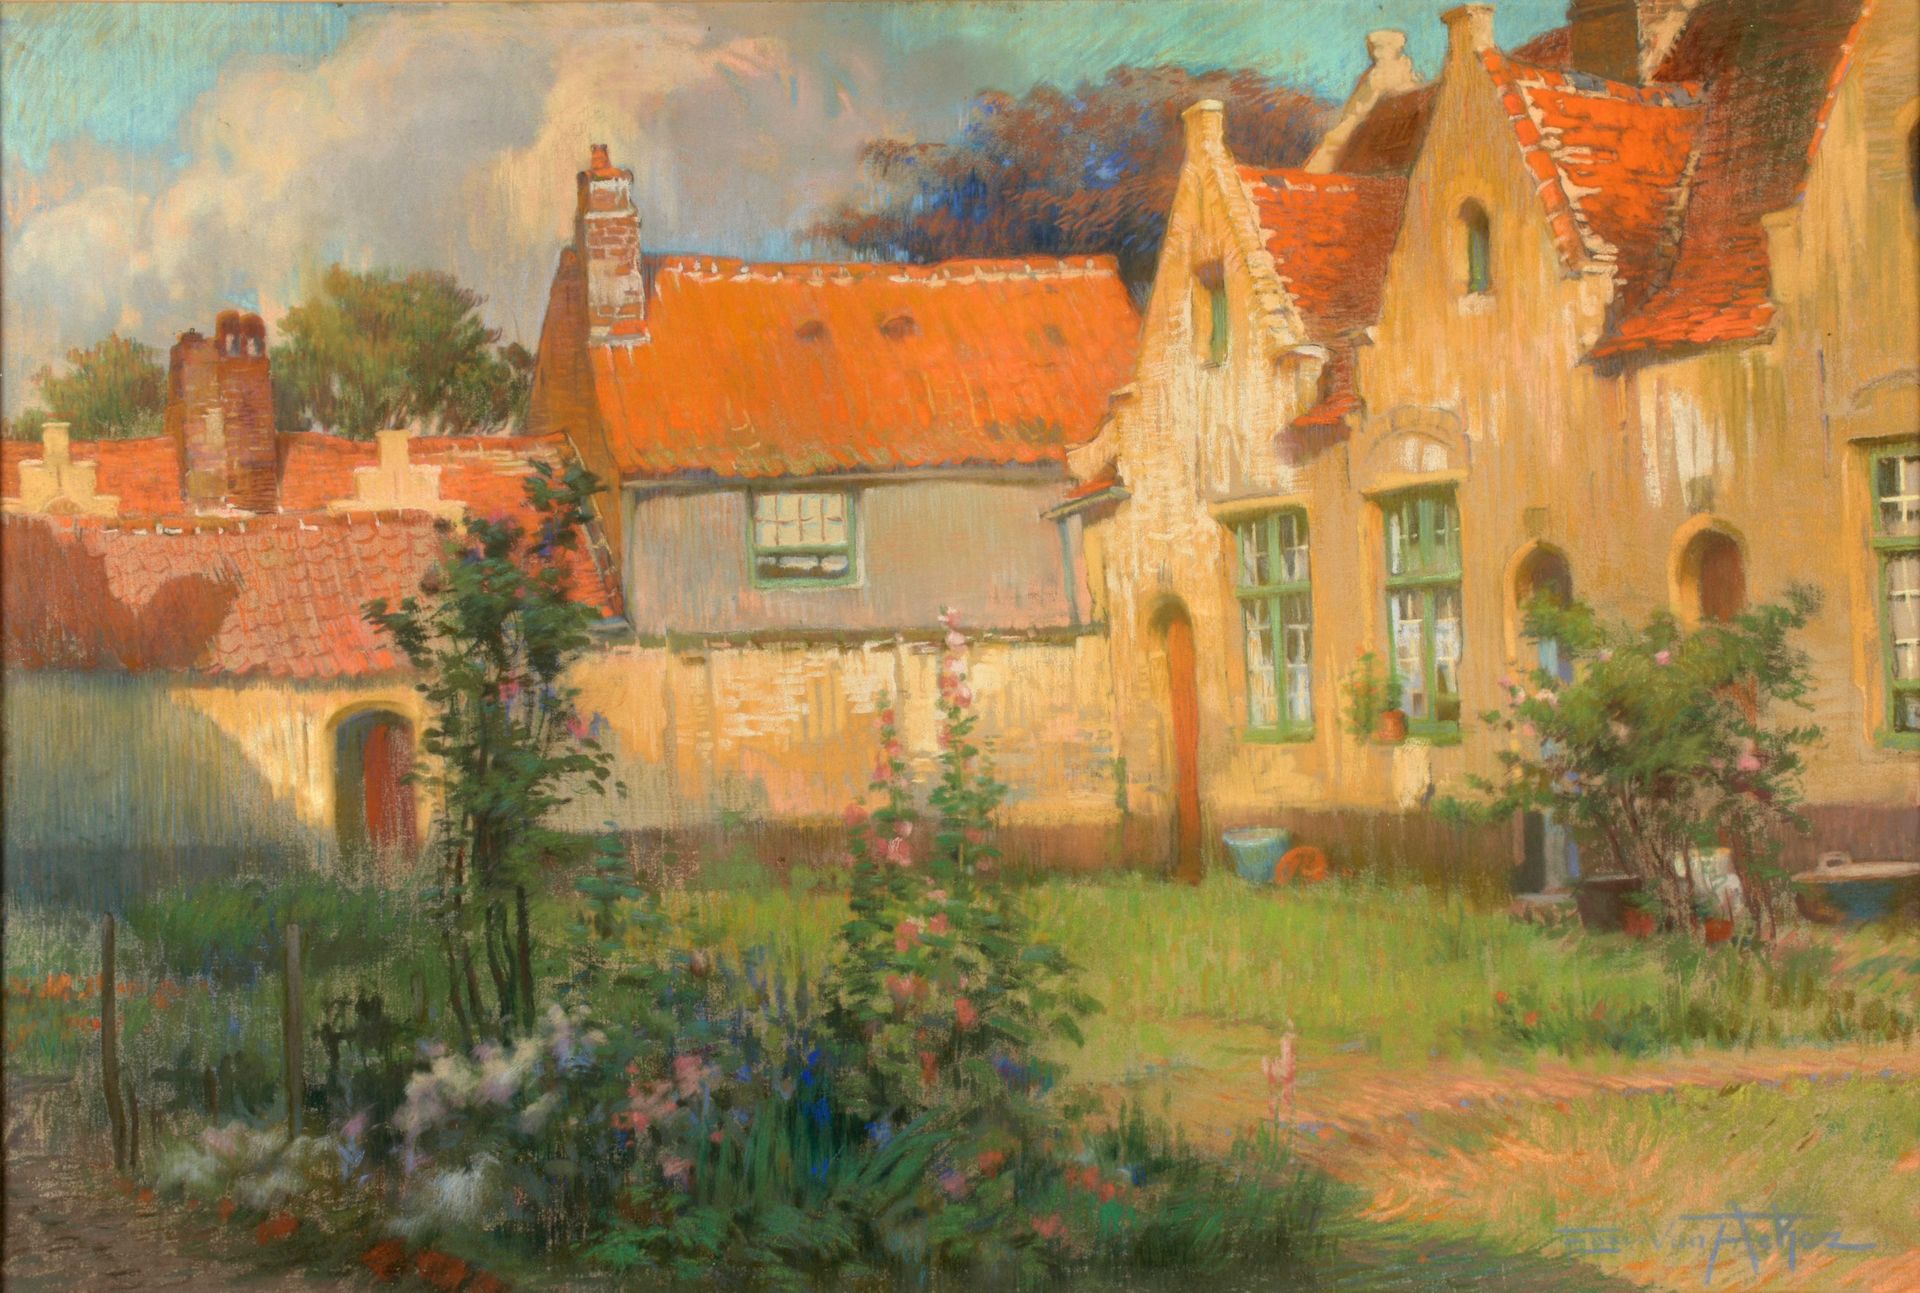 VAN ACKER, Flori (1858-1940) Godshuisjes en Brujas

Pastel (67 x 95 cm) op doek,&hellip;